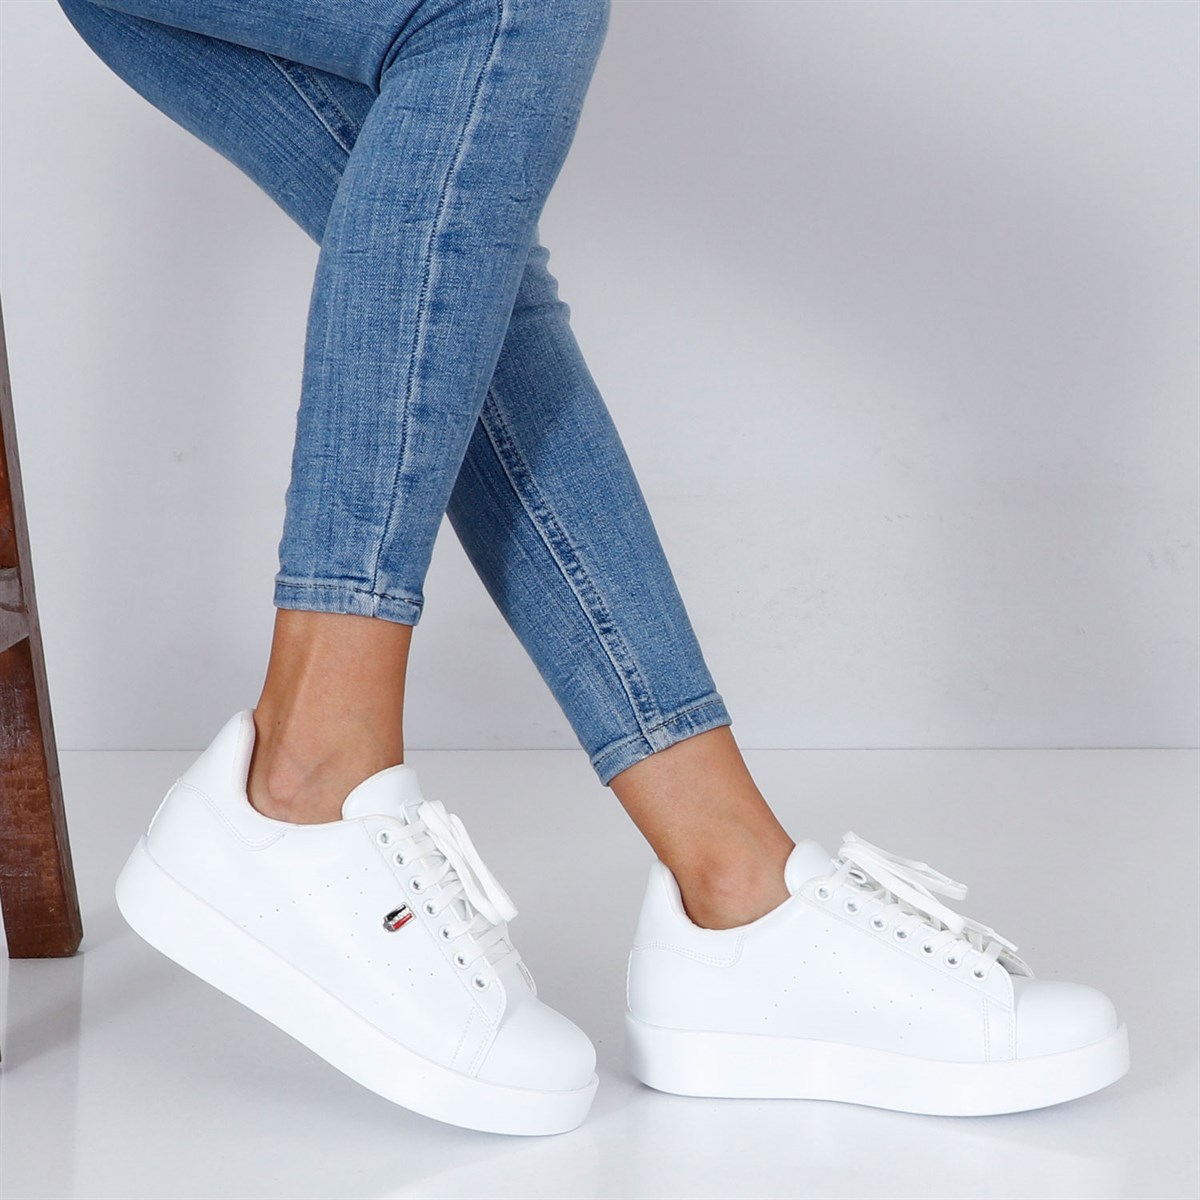 Beyaz Yüksek Taban Kadın Spor Ayakkabı 302 Fiyatı ve Modelleri